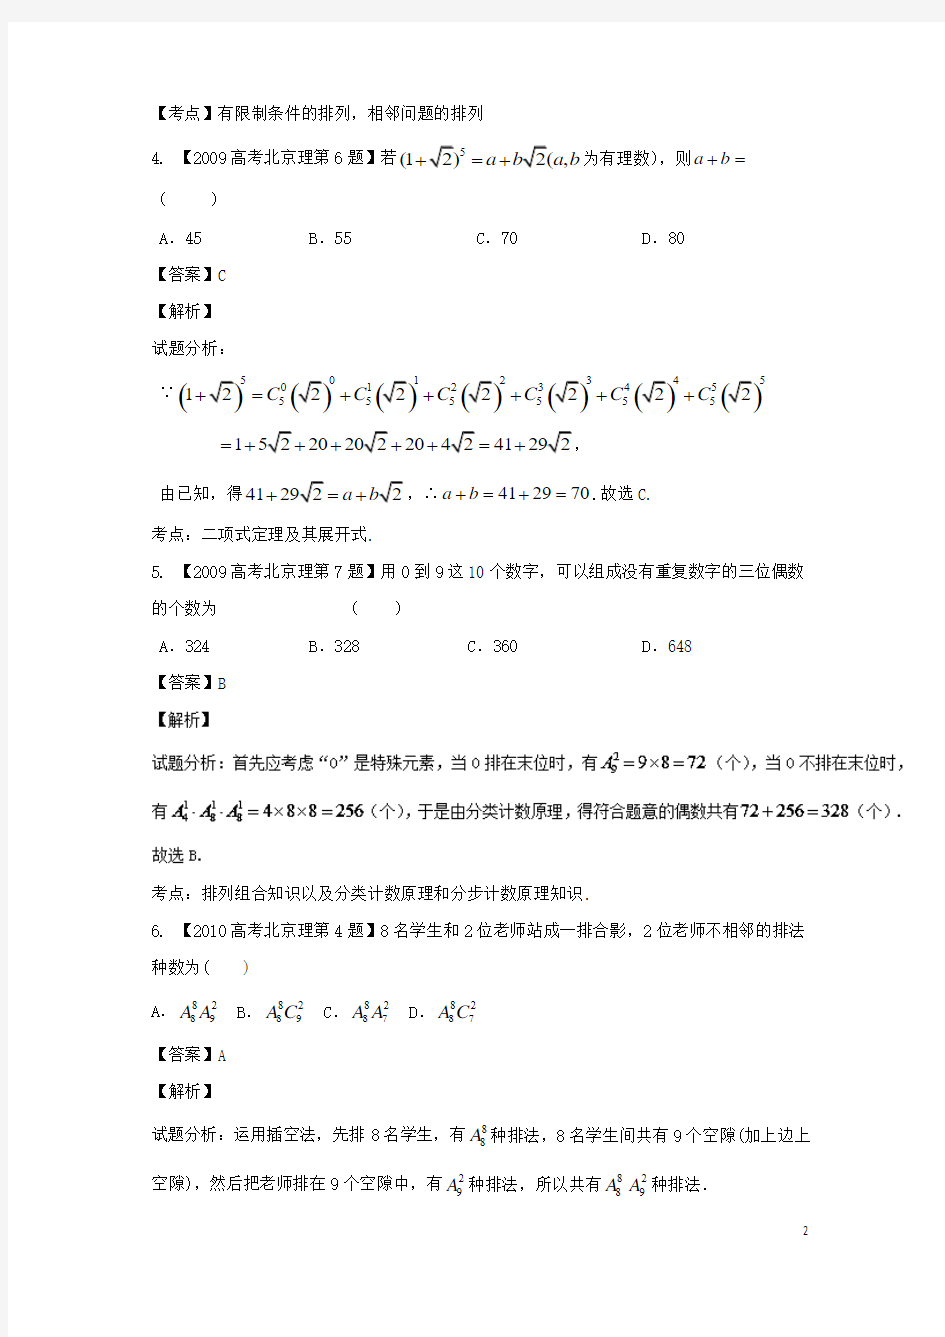 (北京专用)2018年高考数学总复习专题11排列组合、二项式定理分项练习理